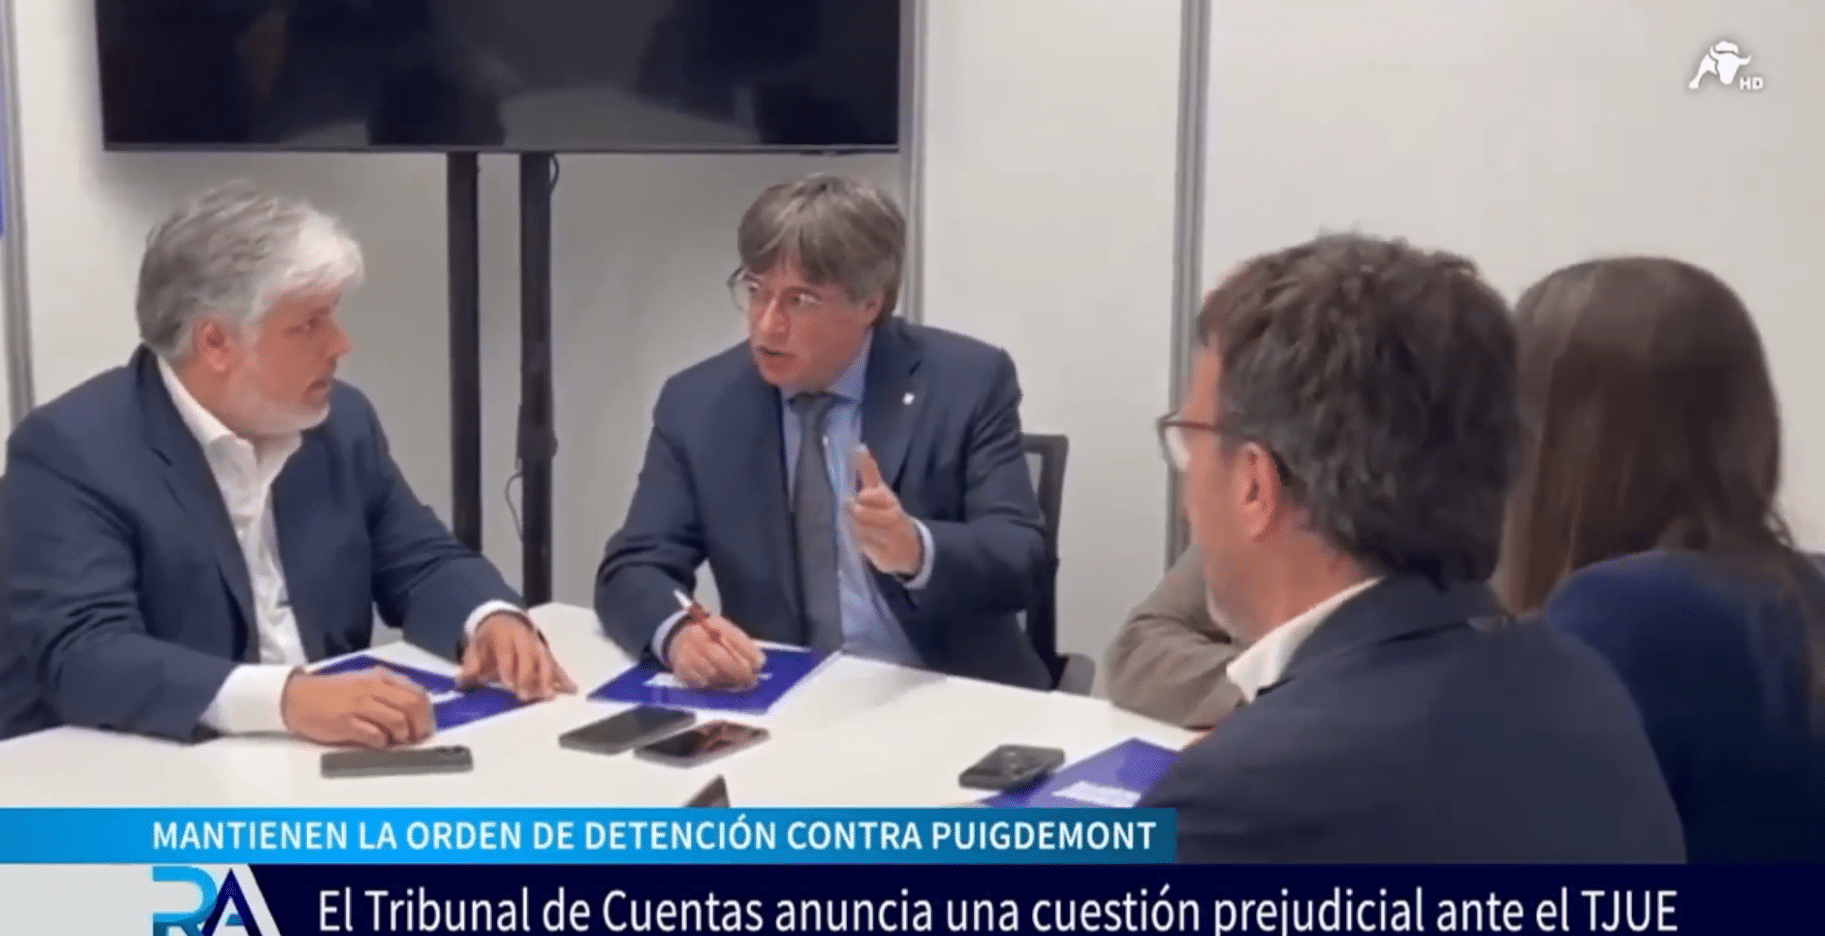  El juez Llarena advierte que la orden de detención de Puigdemont sigue vigente